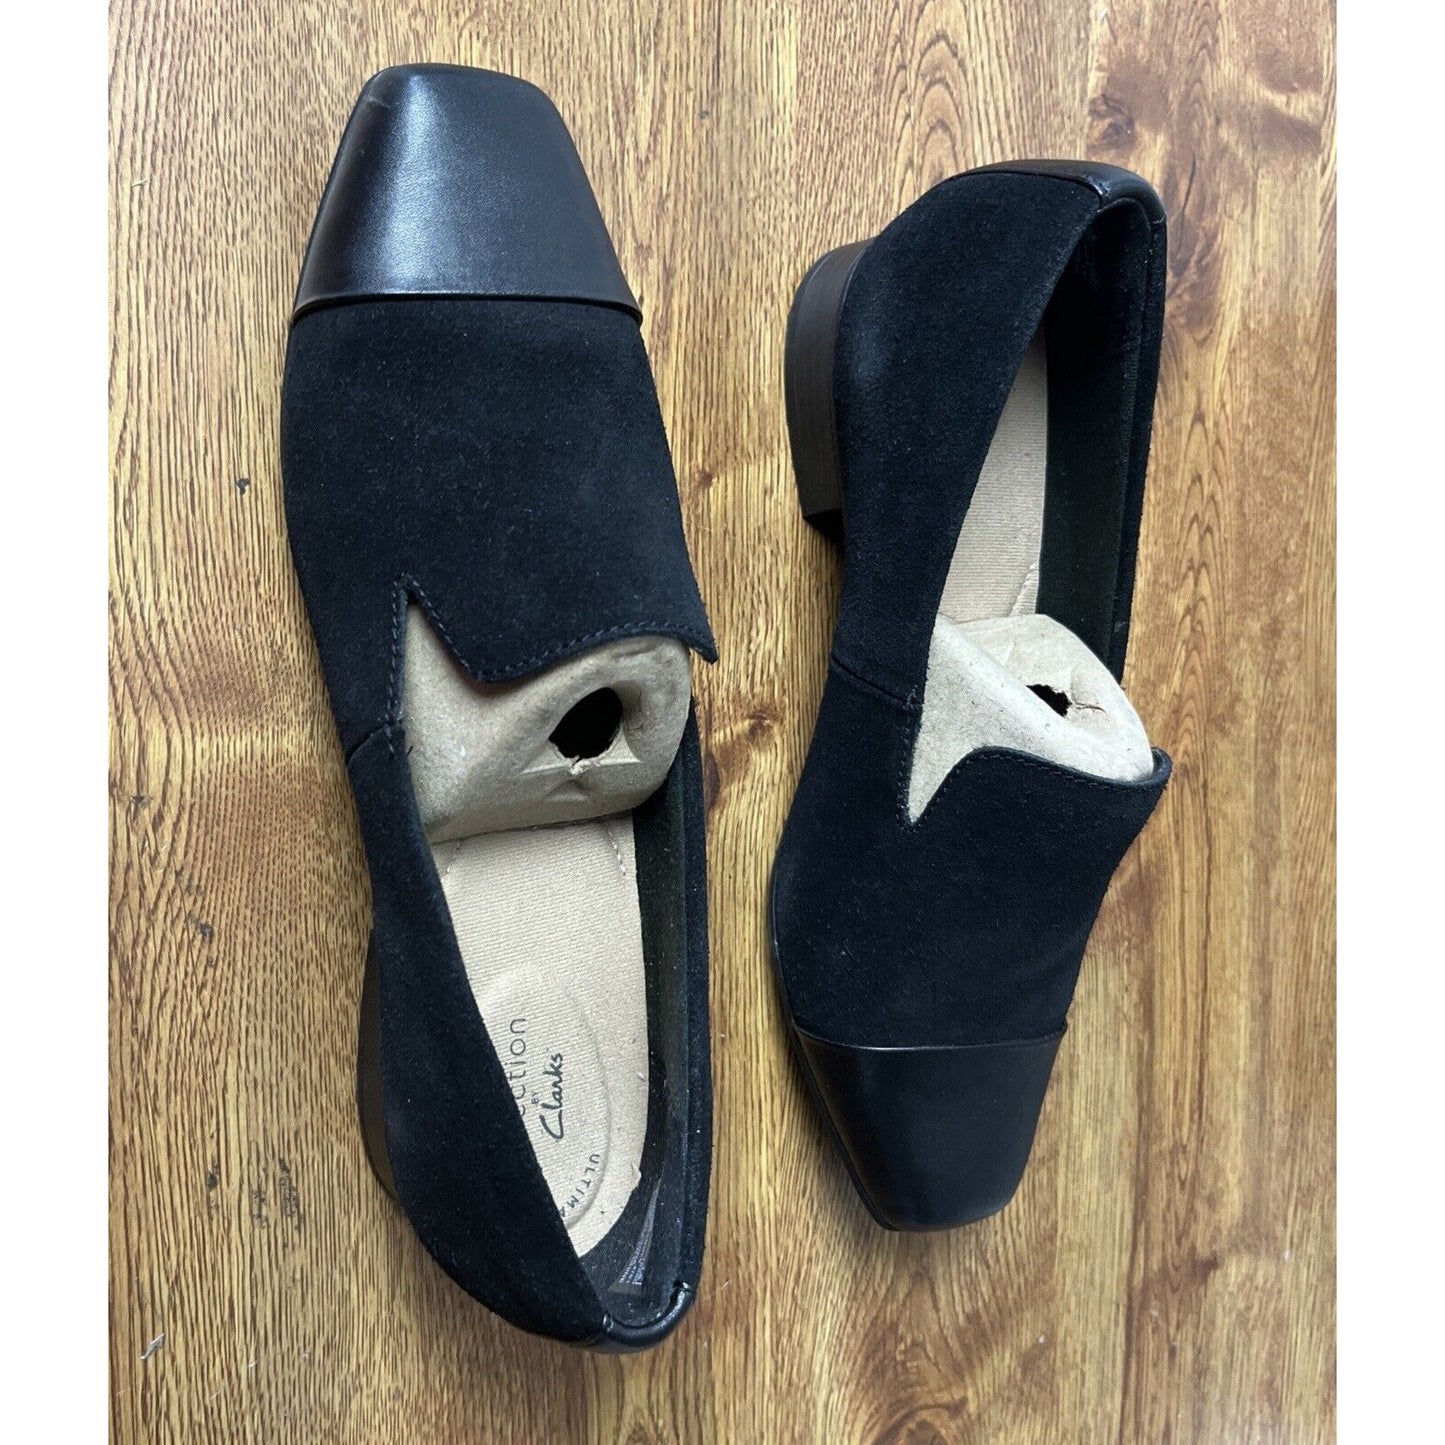 Clarks Tilmont Step Women's Sz 9 M Suede Cap-Toe Loafers Black Shoes A519302